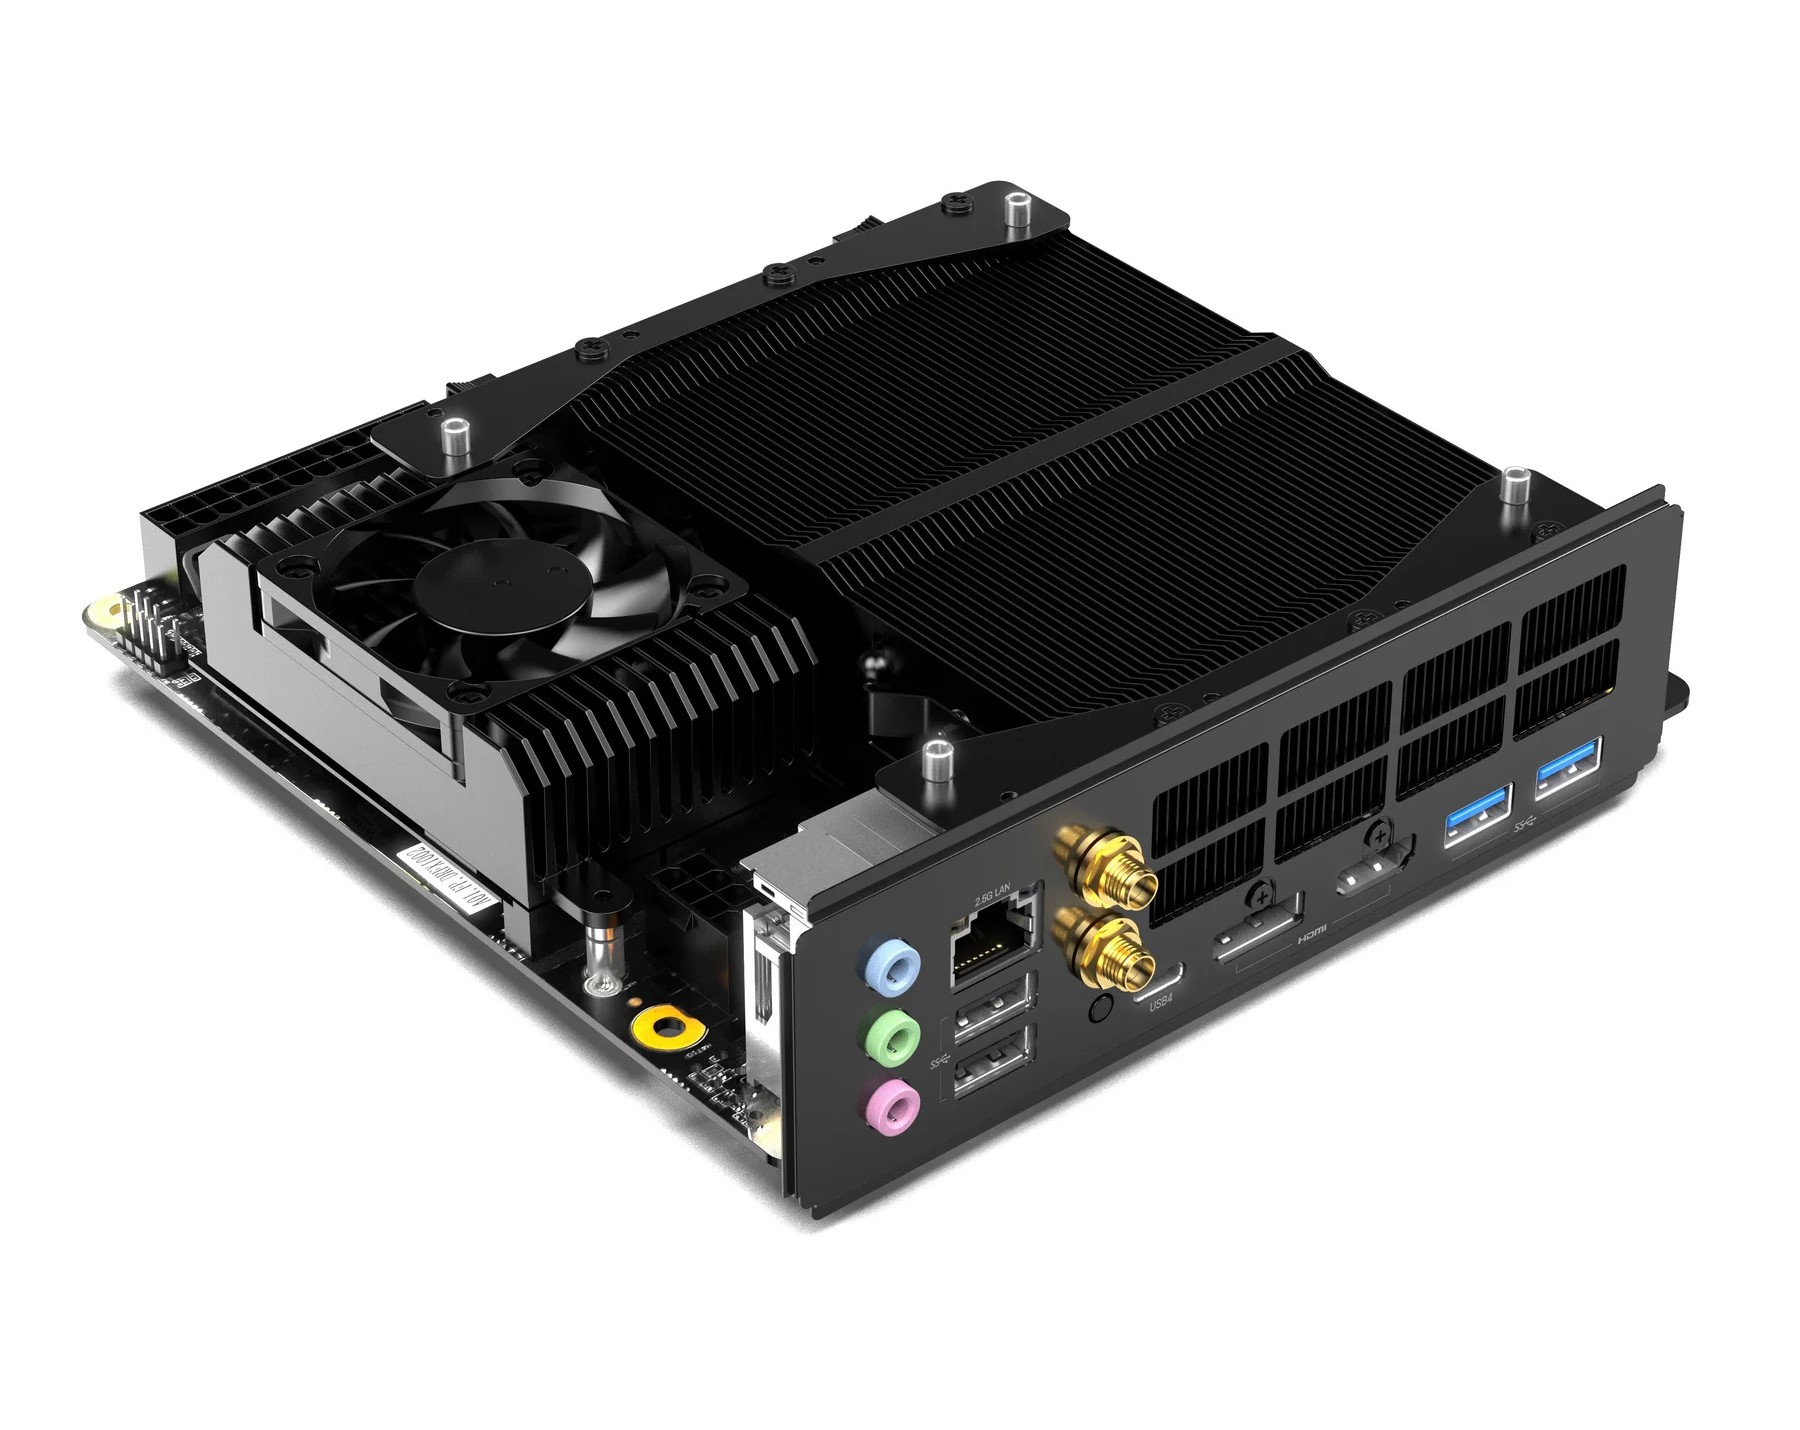 Minisforum lanza la placa base mini-ITX AR900i con procesador